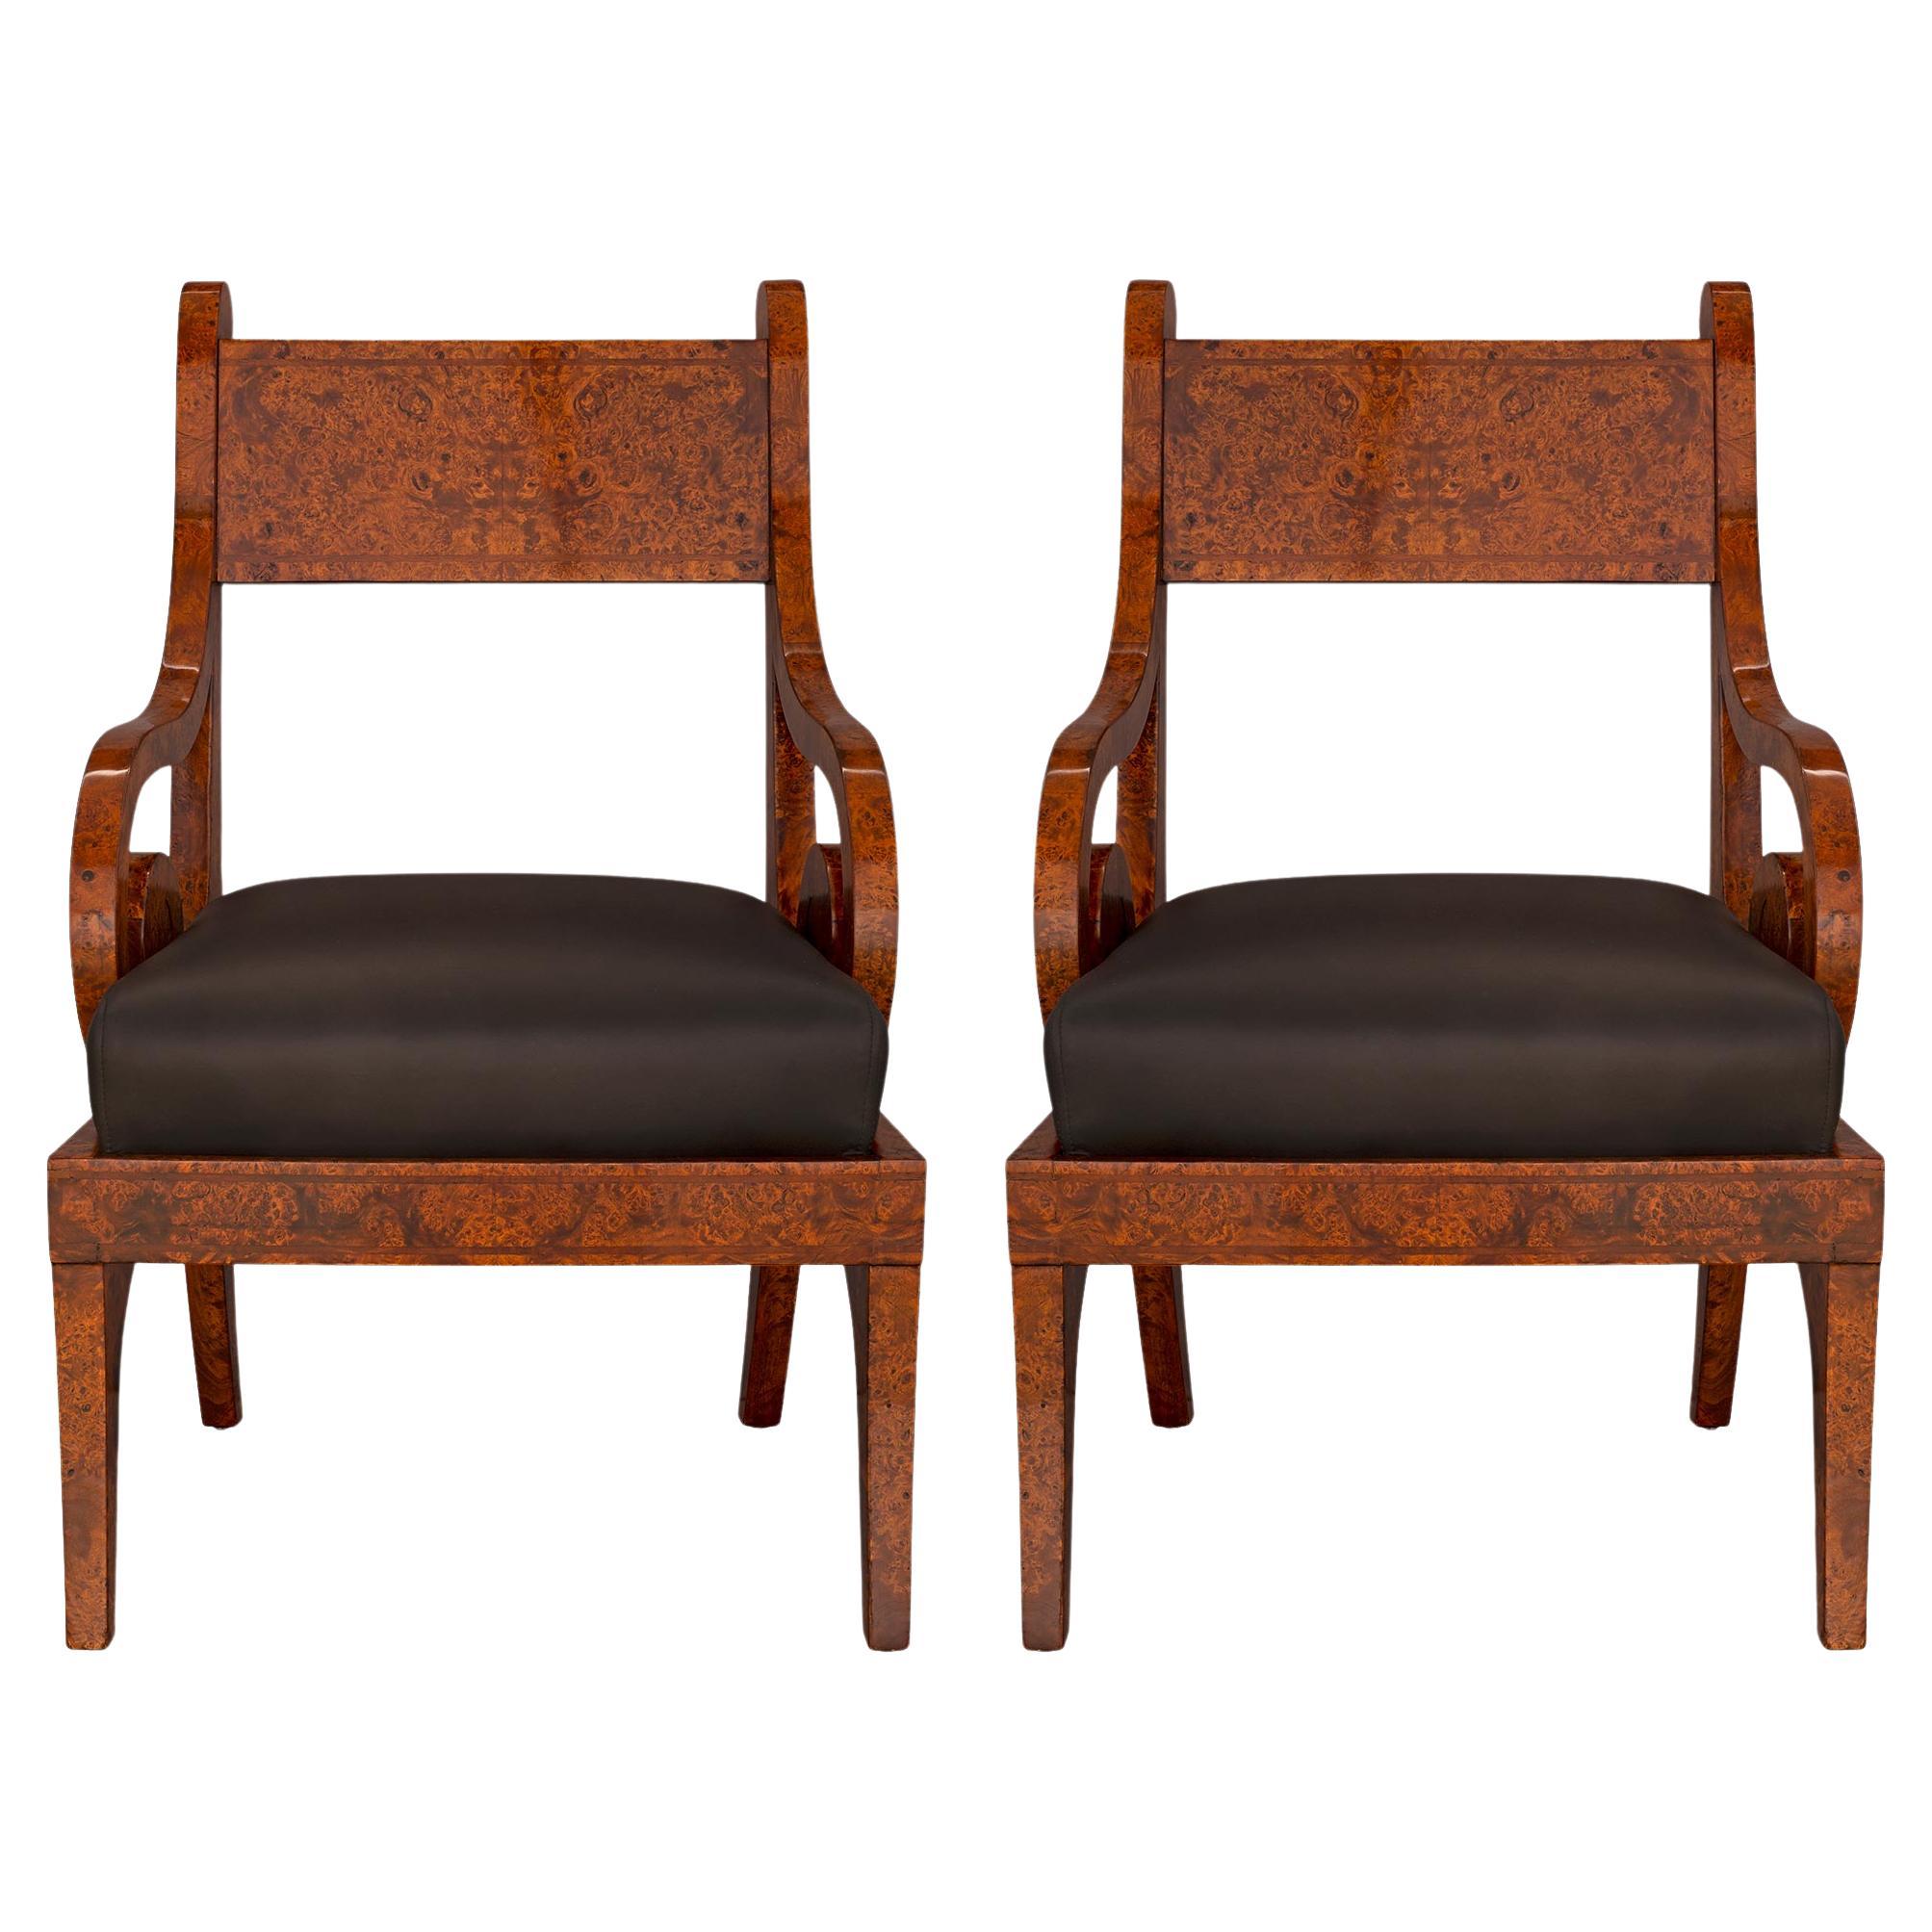 Paire de fauteuils continentaux néo-classiques en bois d'orme de ronce du début du XIXe siècle